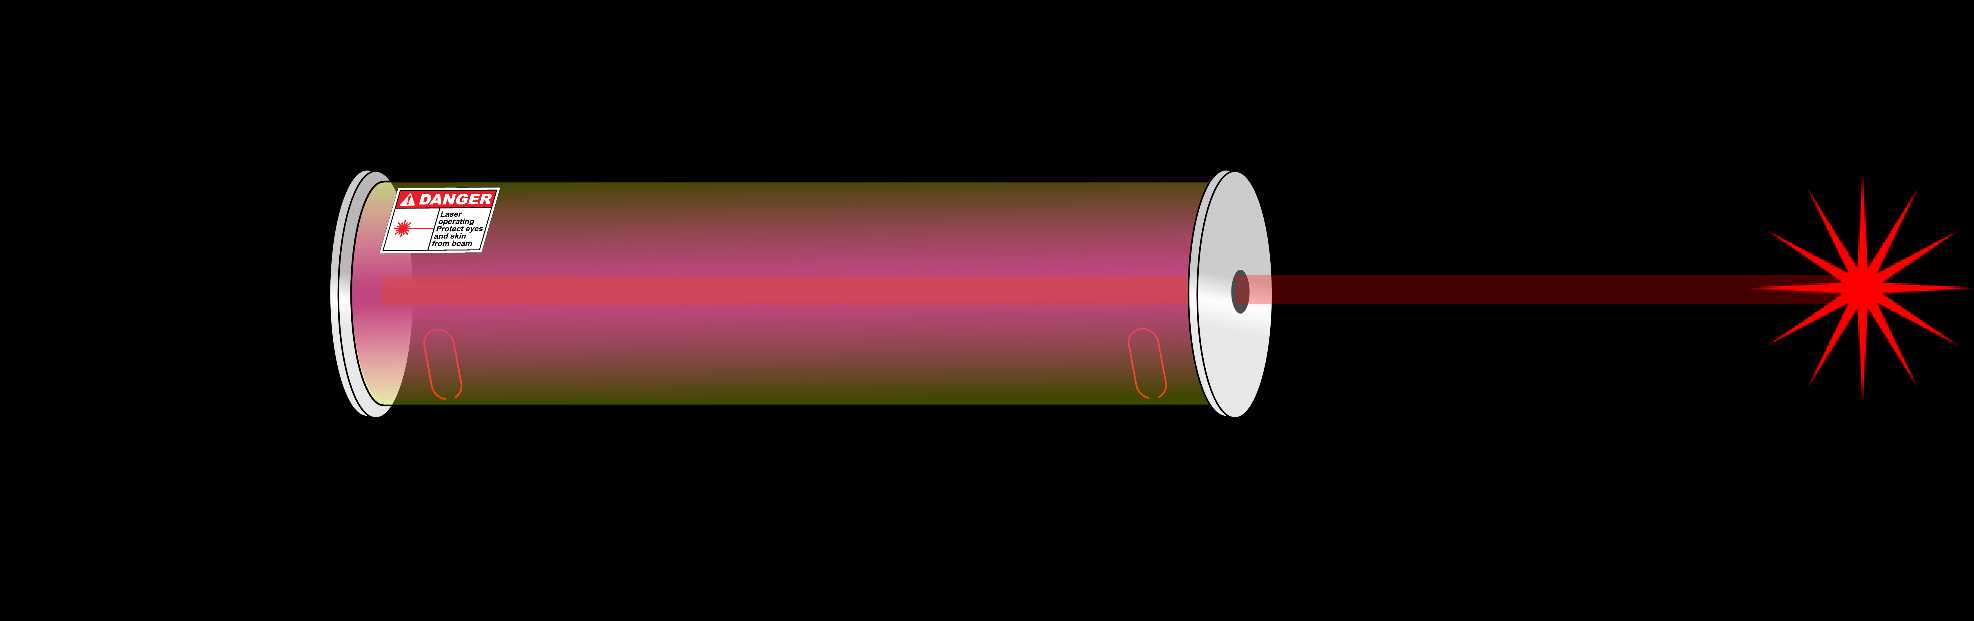 Láser ejemplo de un láser de Helio Neón (no se emplea en comunicaciones) Los fotones (ondas de la misma fase y frecuencia) presentes en la cavidad resonante interfieren constructivamente amplificando